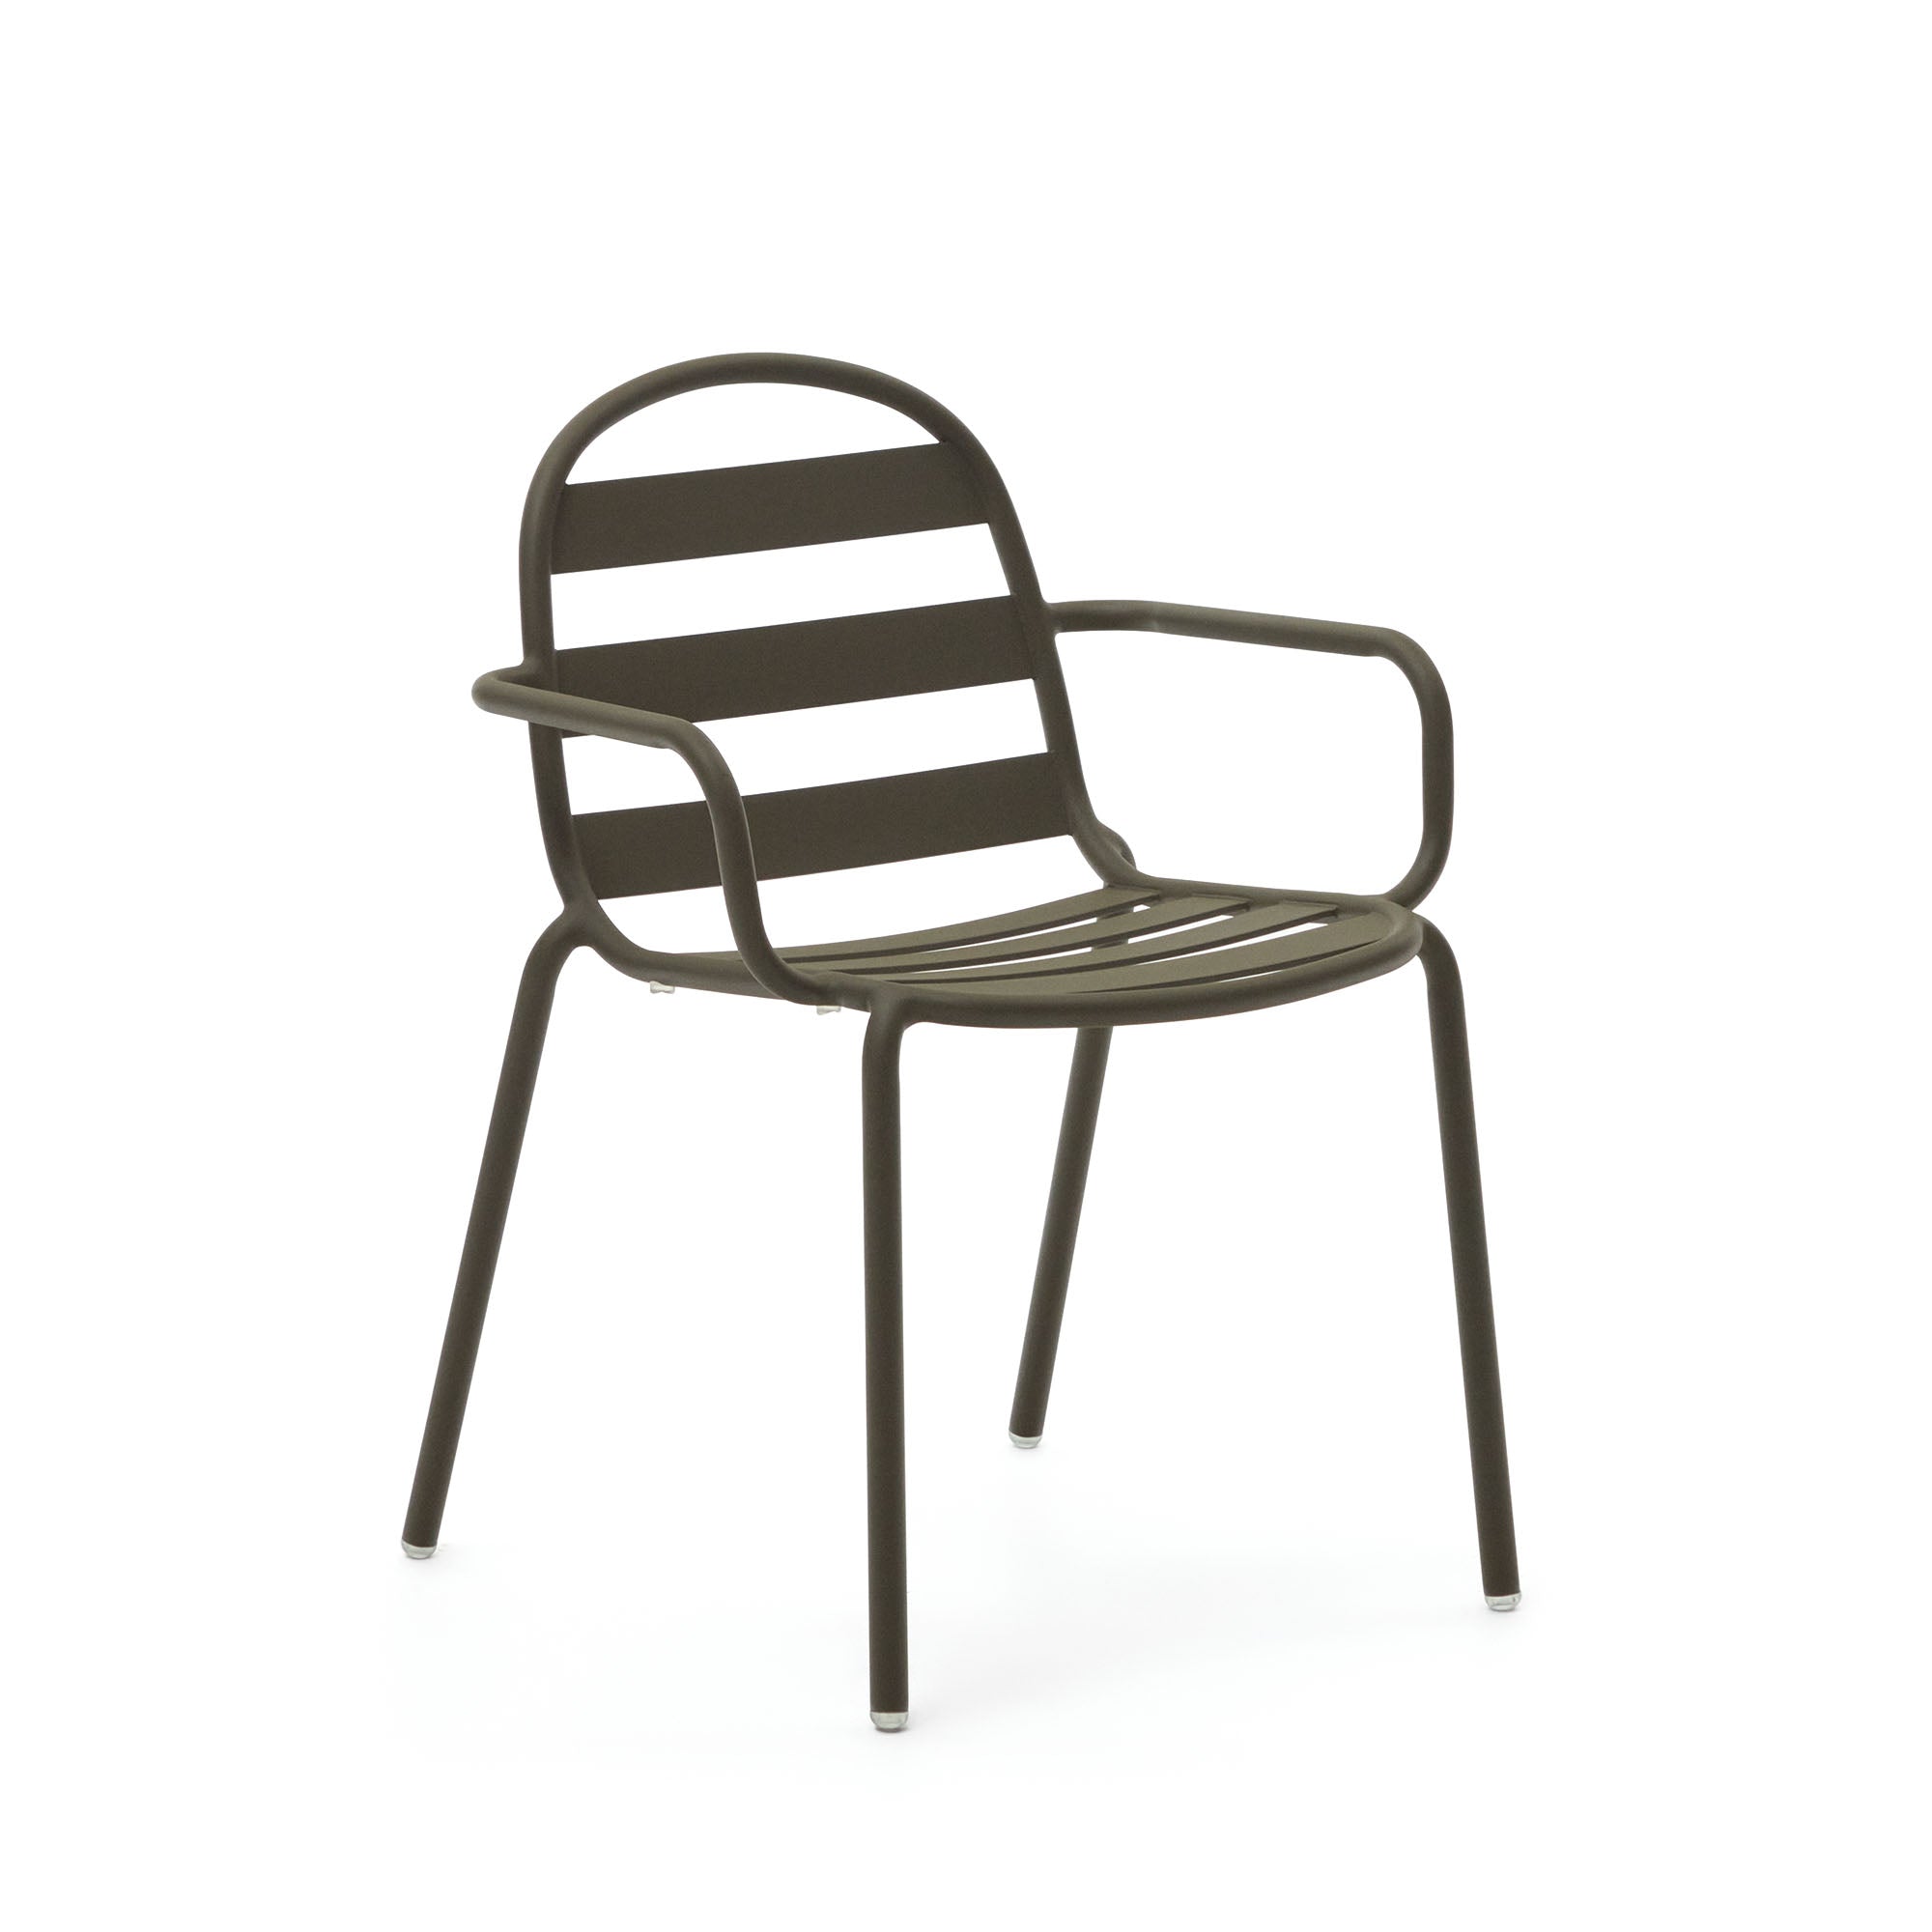 Joncols egymásba rakható kültéri alumínium szék porszórt zöld színű bevonattal